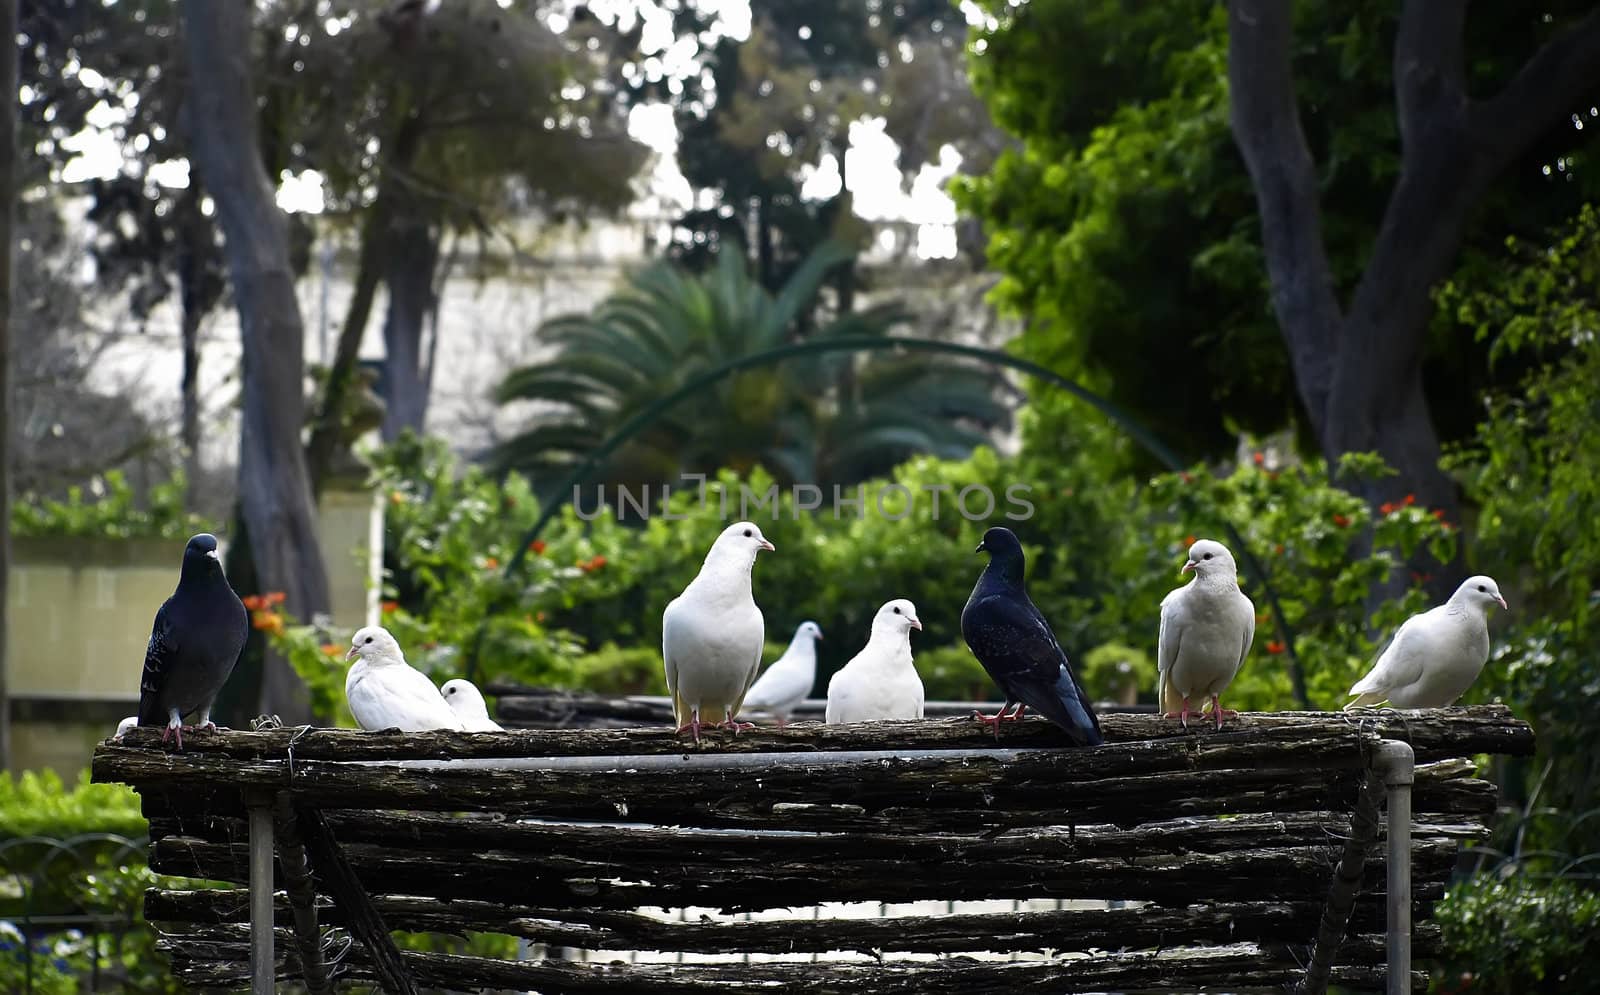 Mediterranean pigeon roost